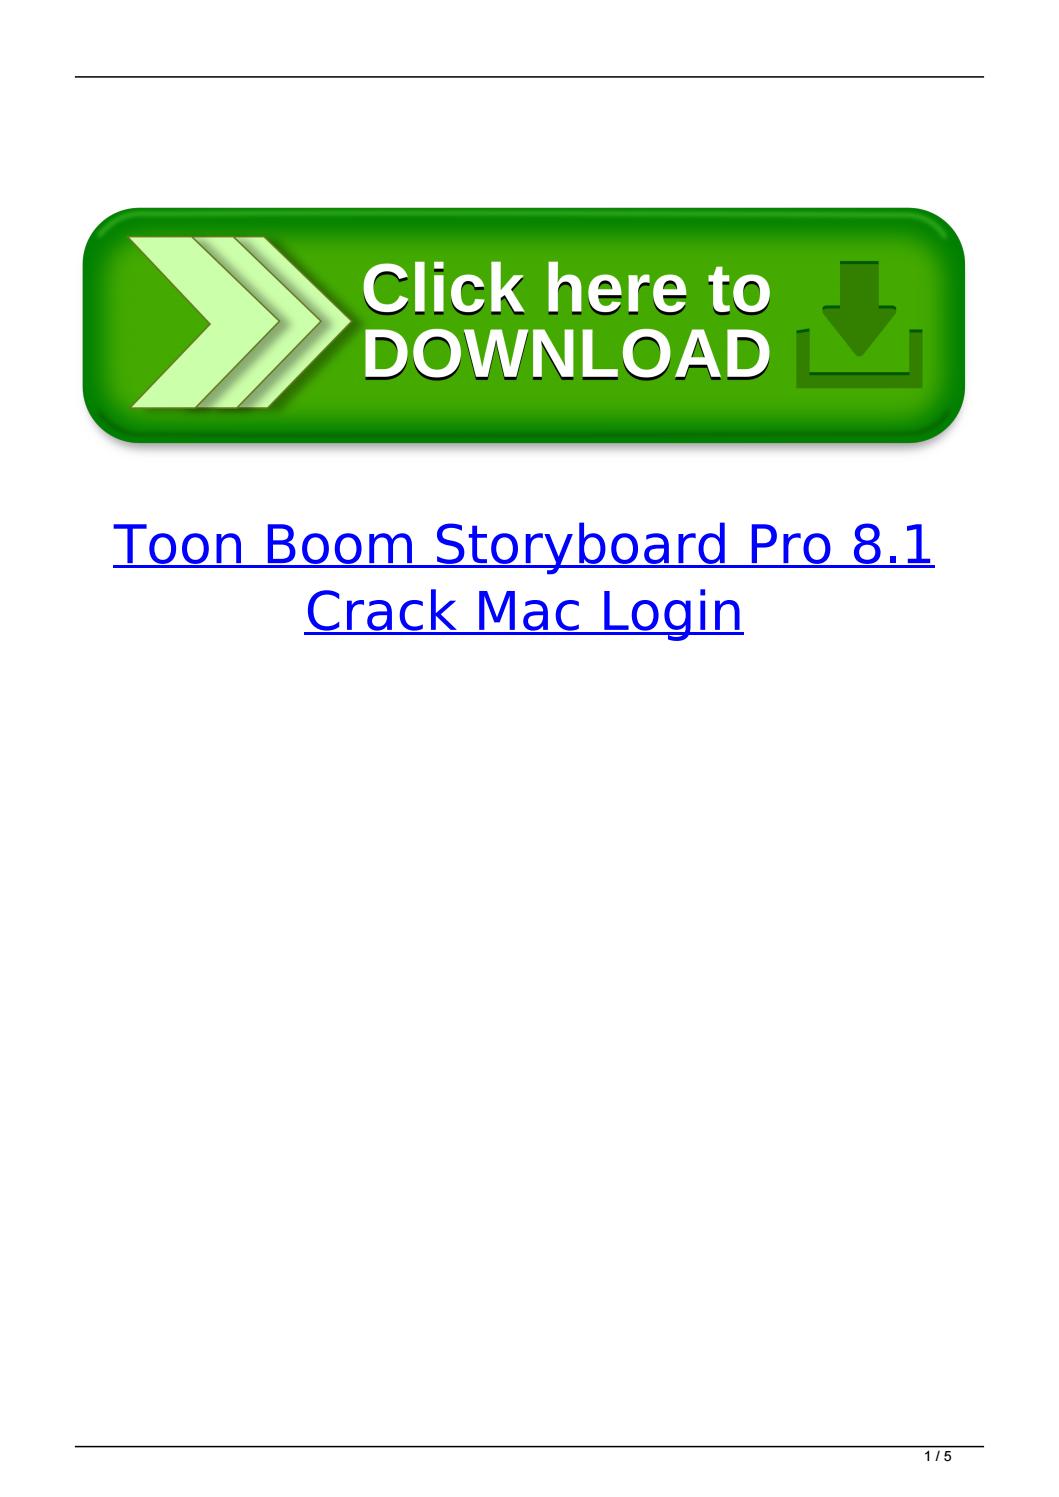 toon boom storyboard pro ipad